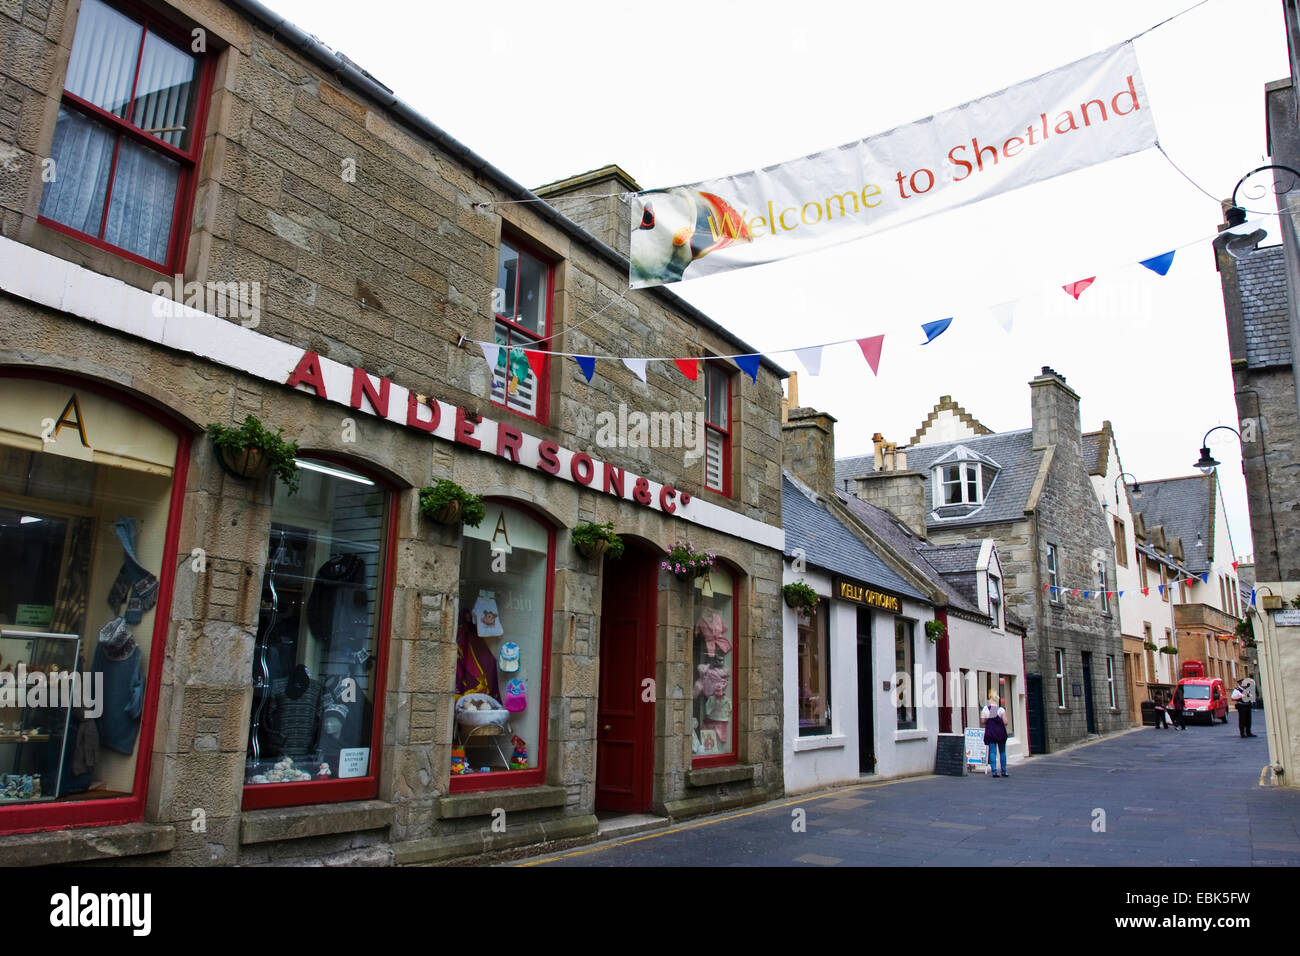 Dans la rue Lewick avec drapeau 'Bienvenue à Shetland', Royaume-Uni, Ecosse, Iles Shetland Banque D'Images